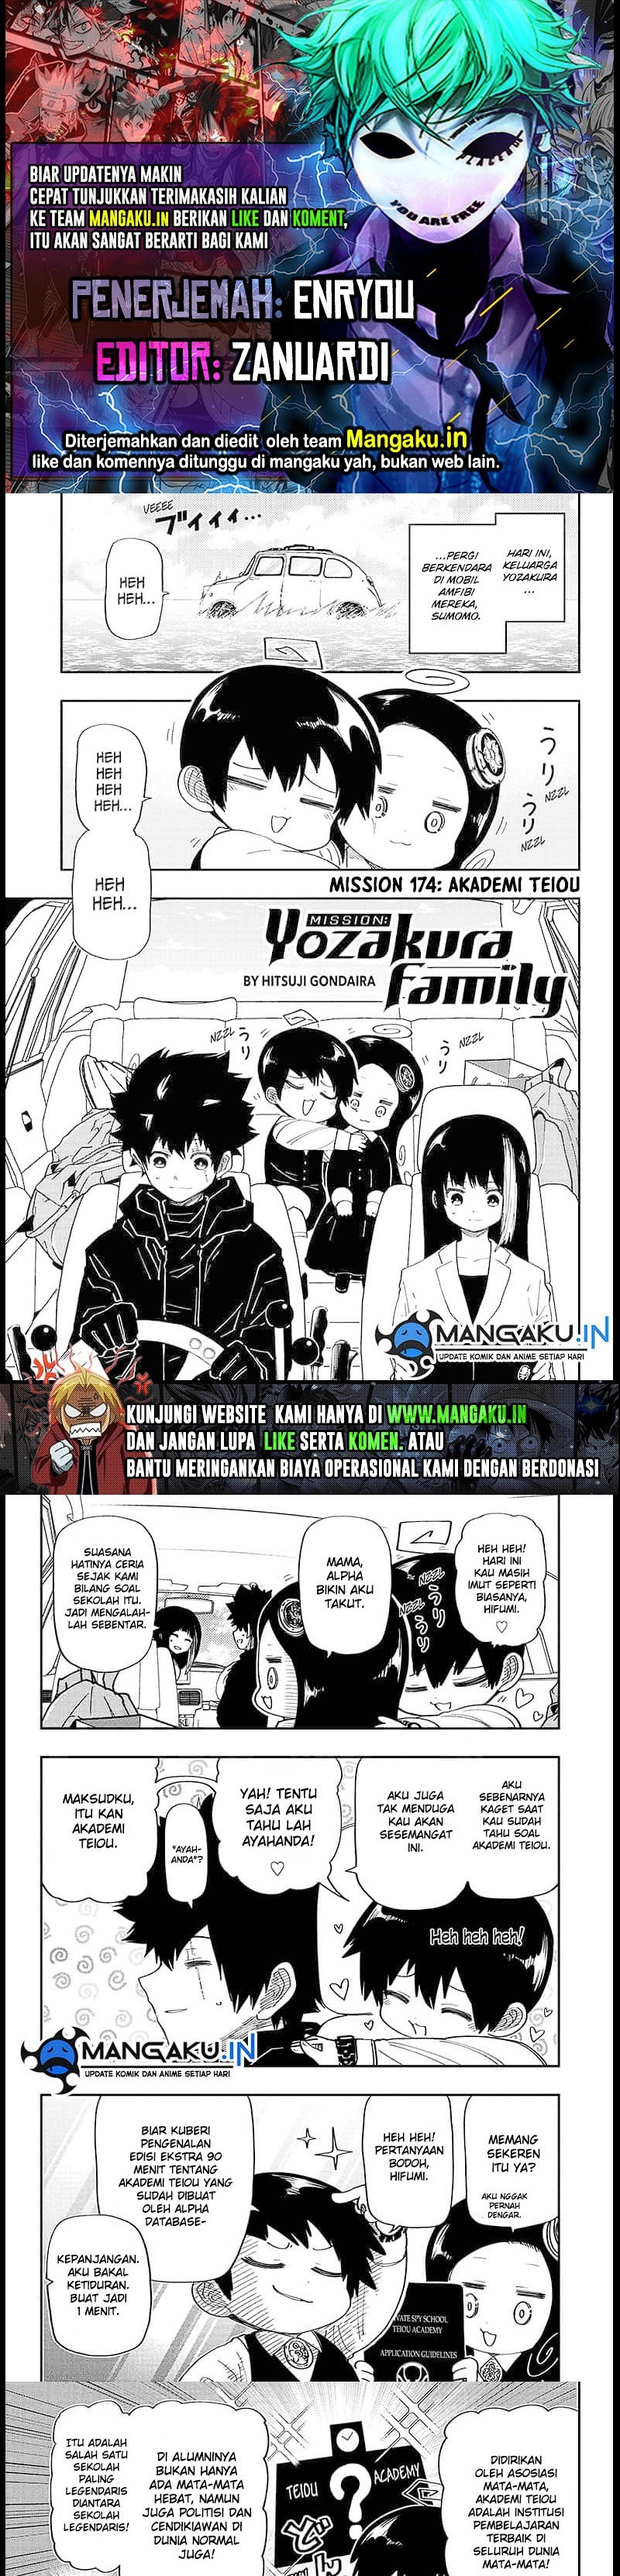 Mission: Yozakura Family Chapter 174